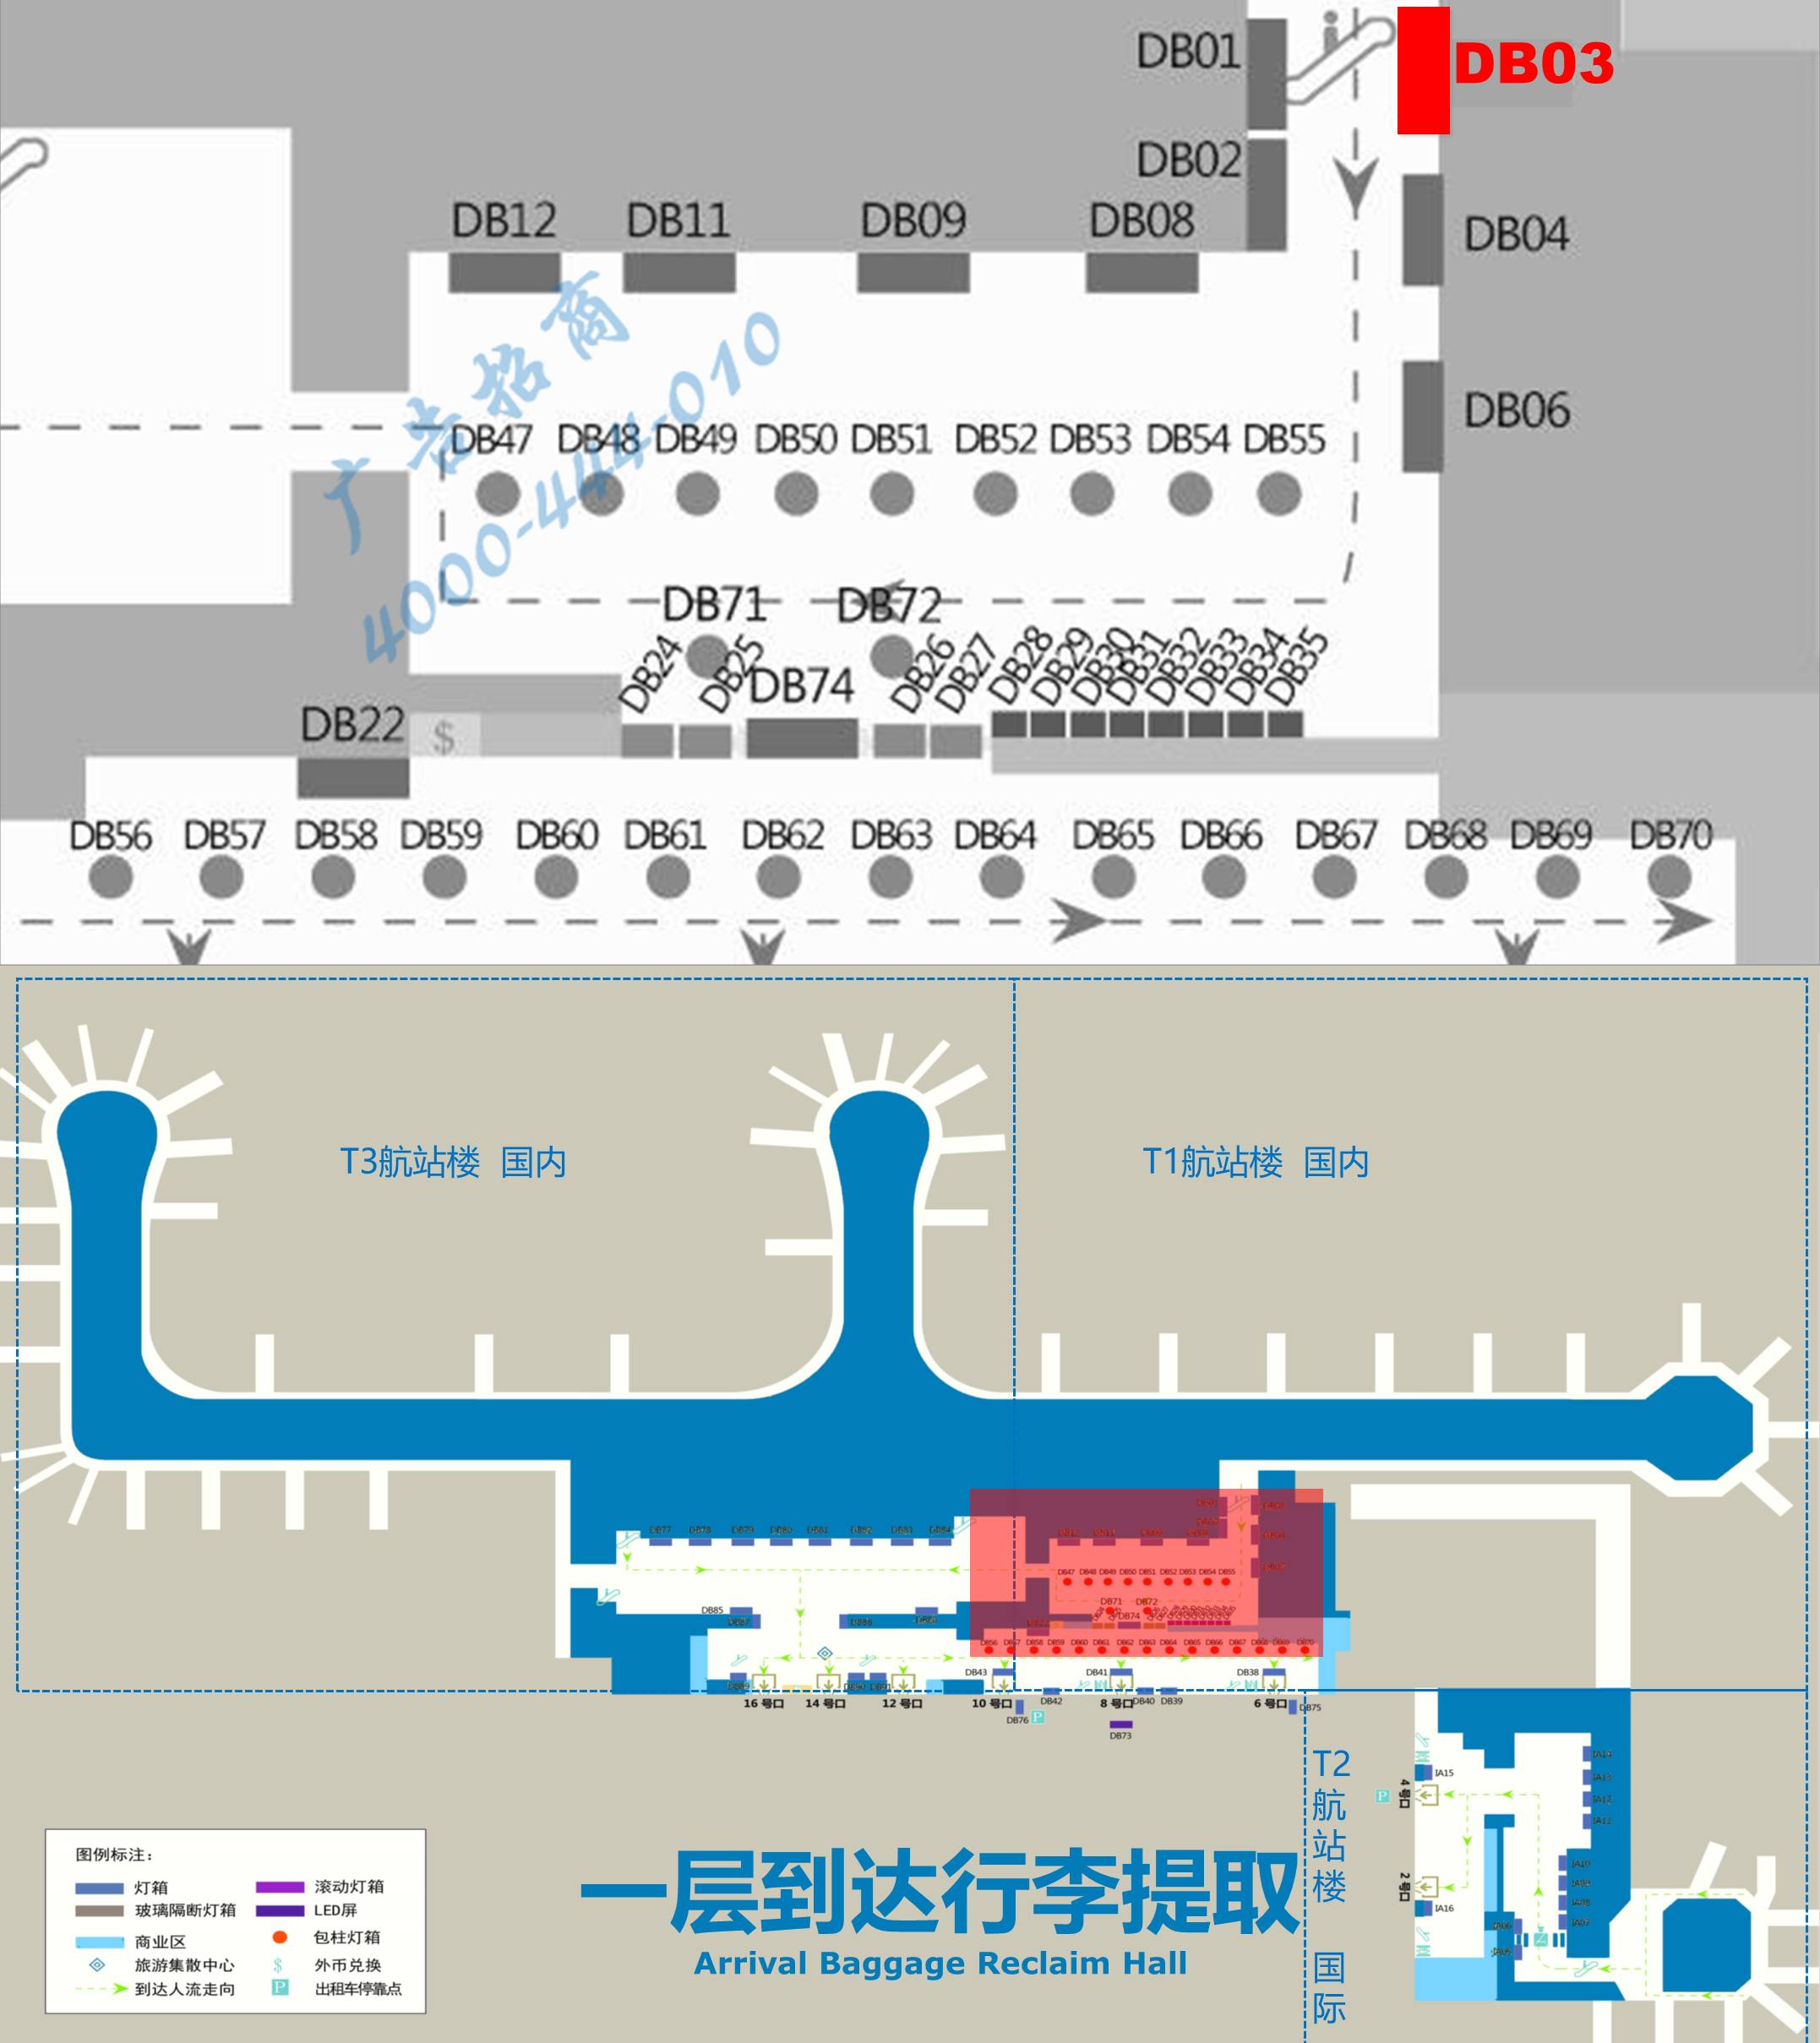 杭州萧山机场广告-T1到达自动扶梯旁灯箱DB03位置图